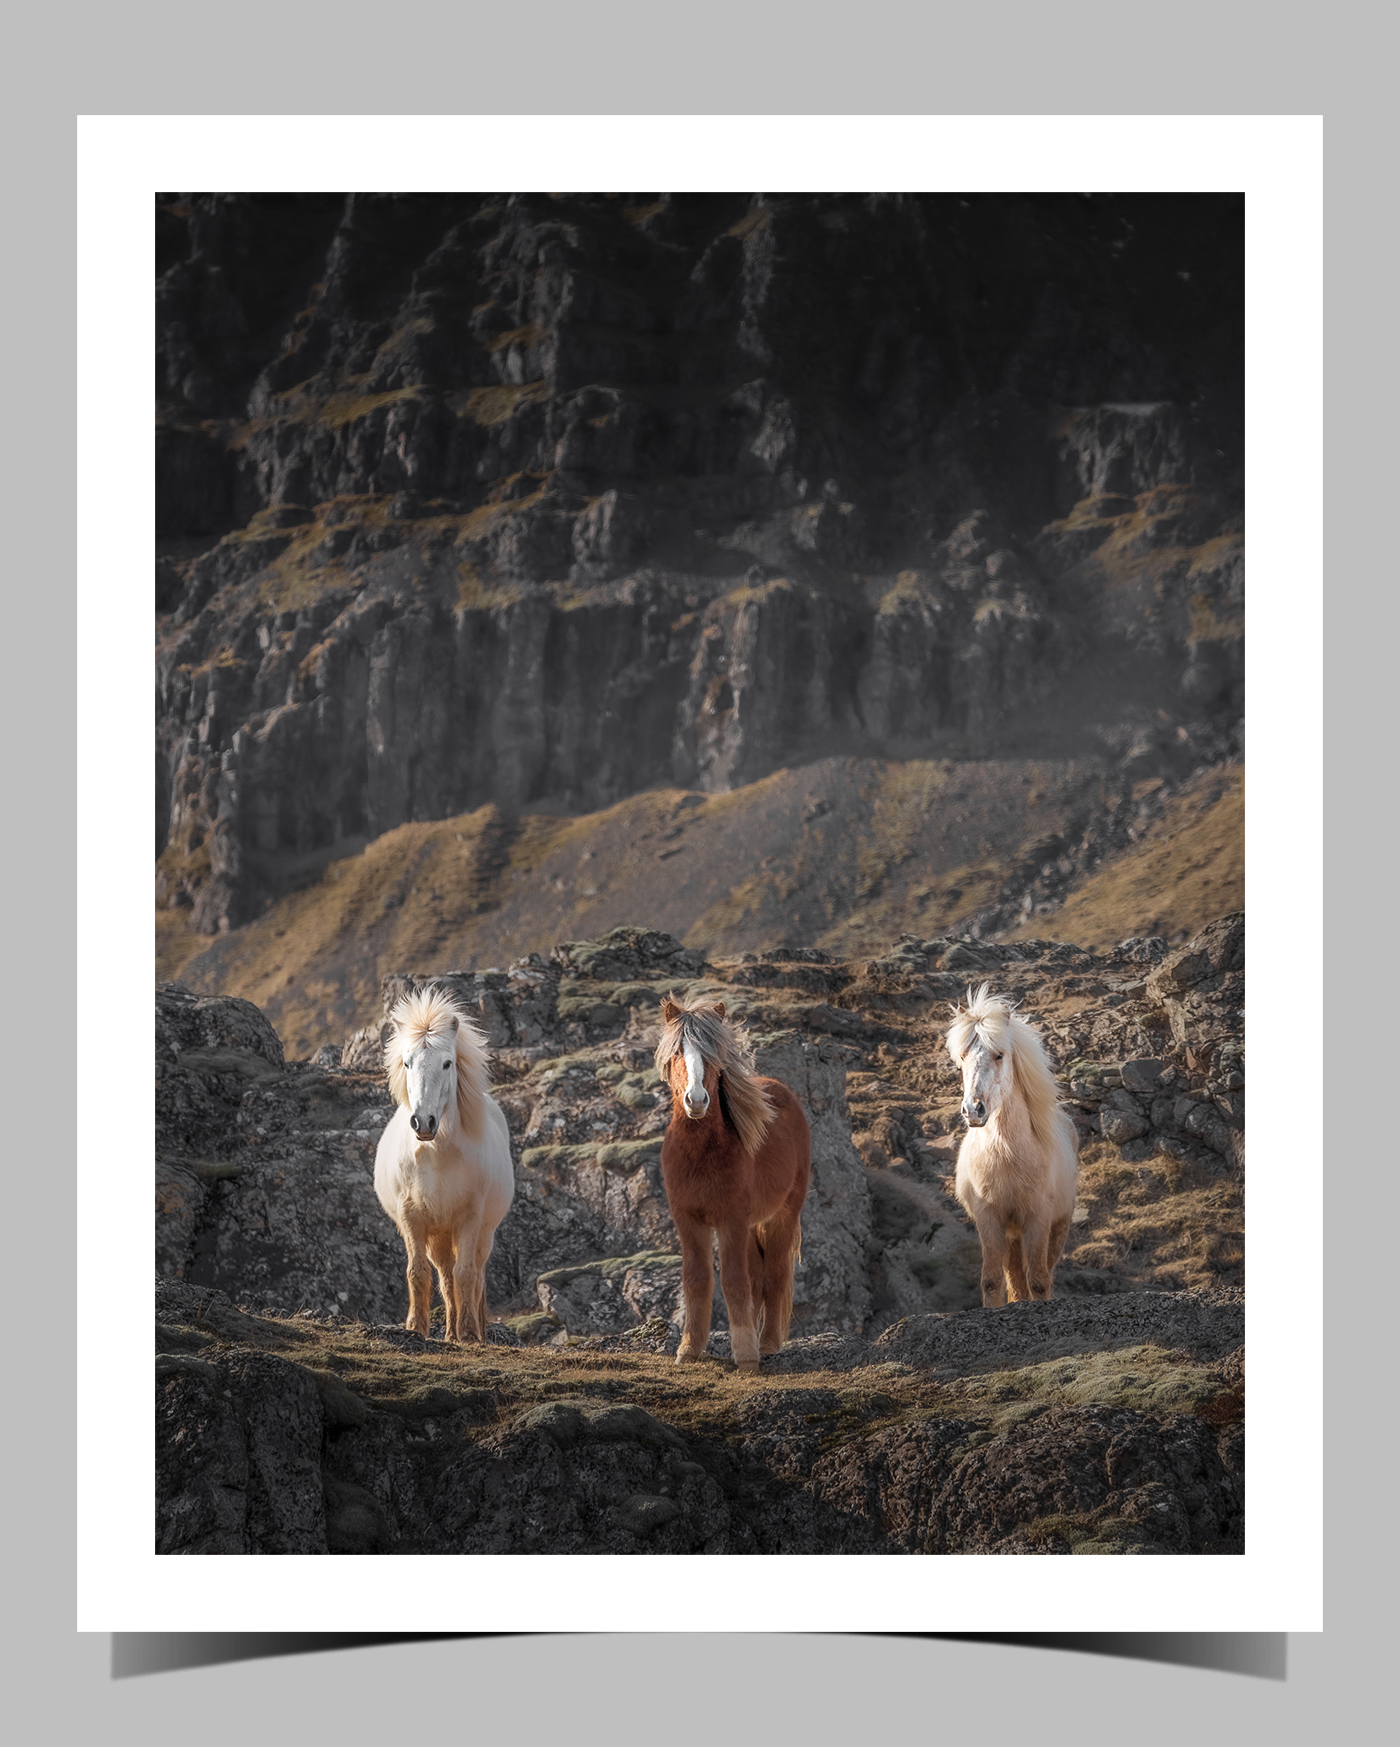 Paarden IJsland